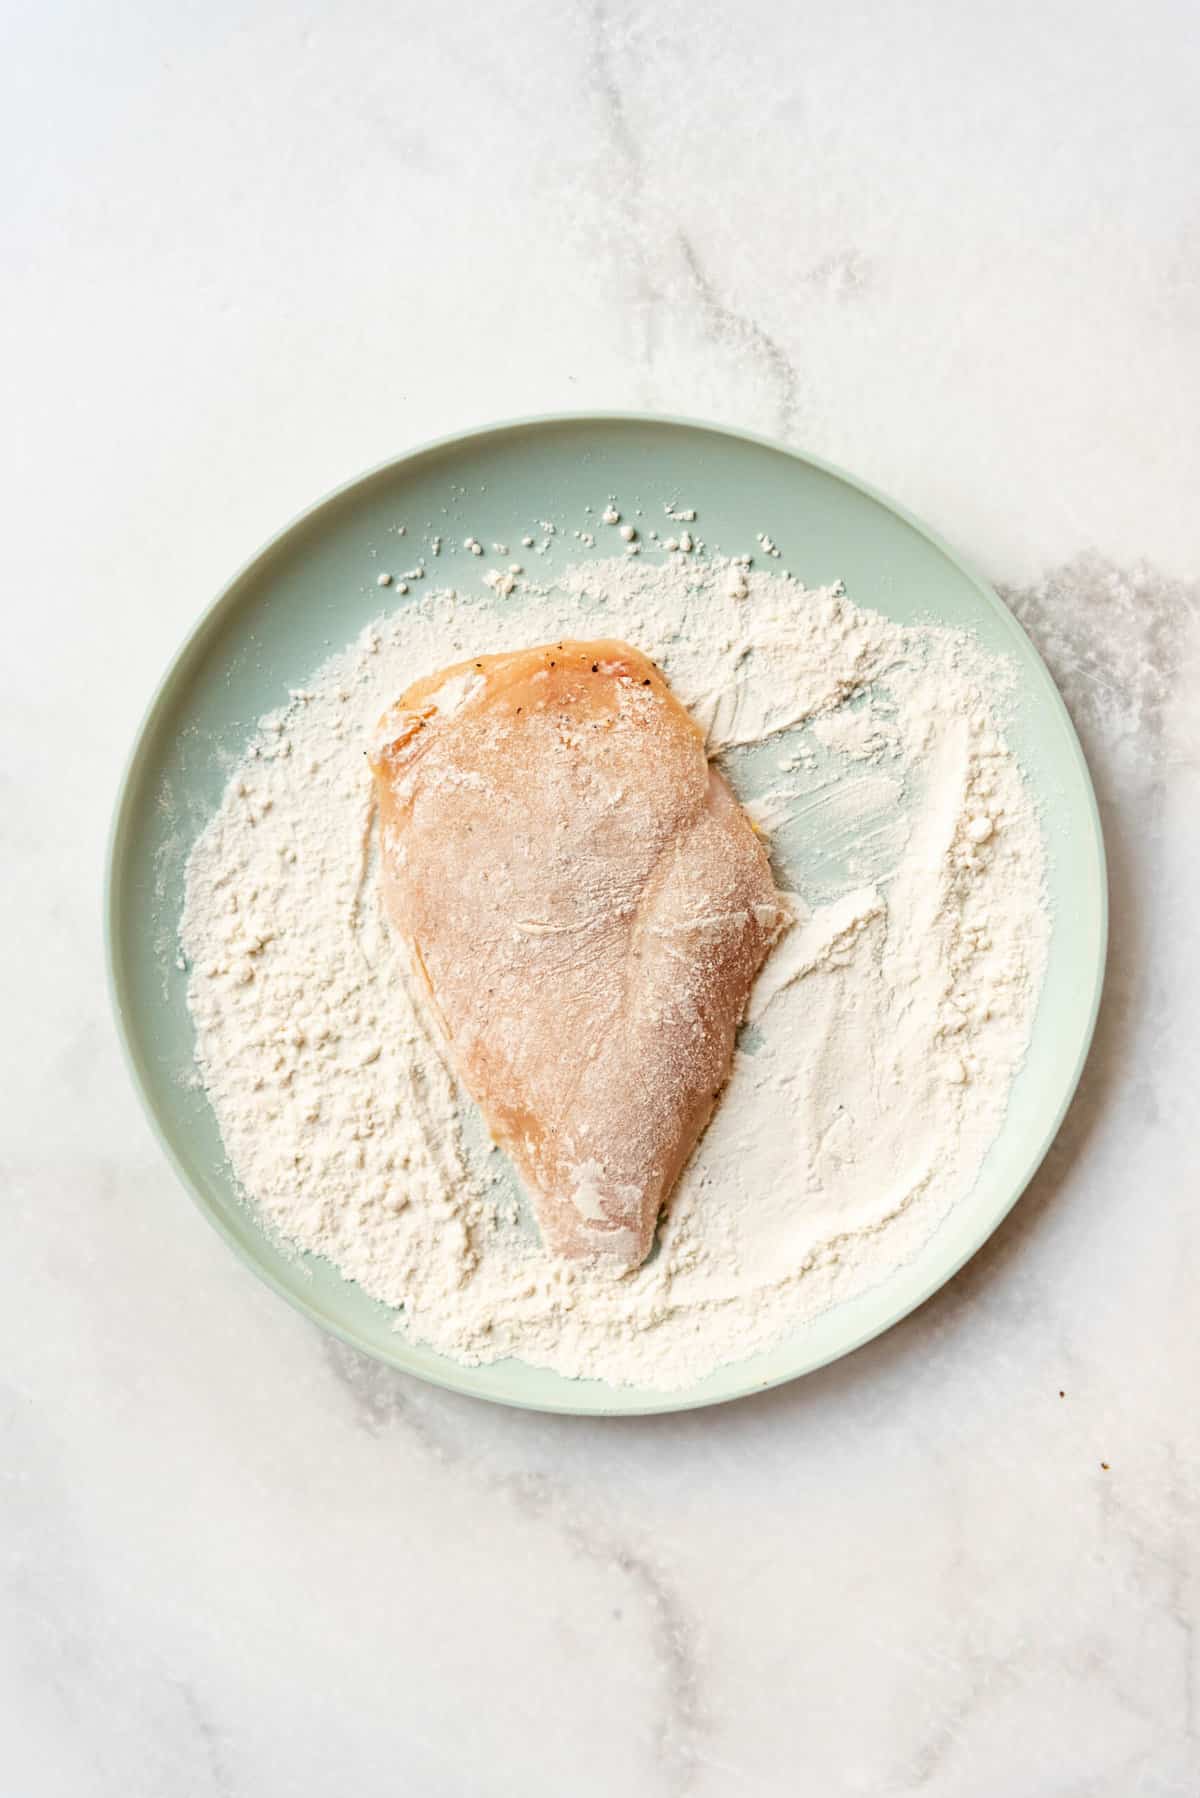 Dredging a chicken breast cutlet in flour.